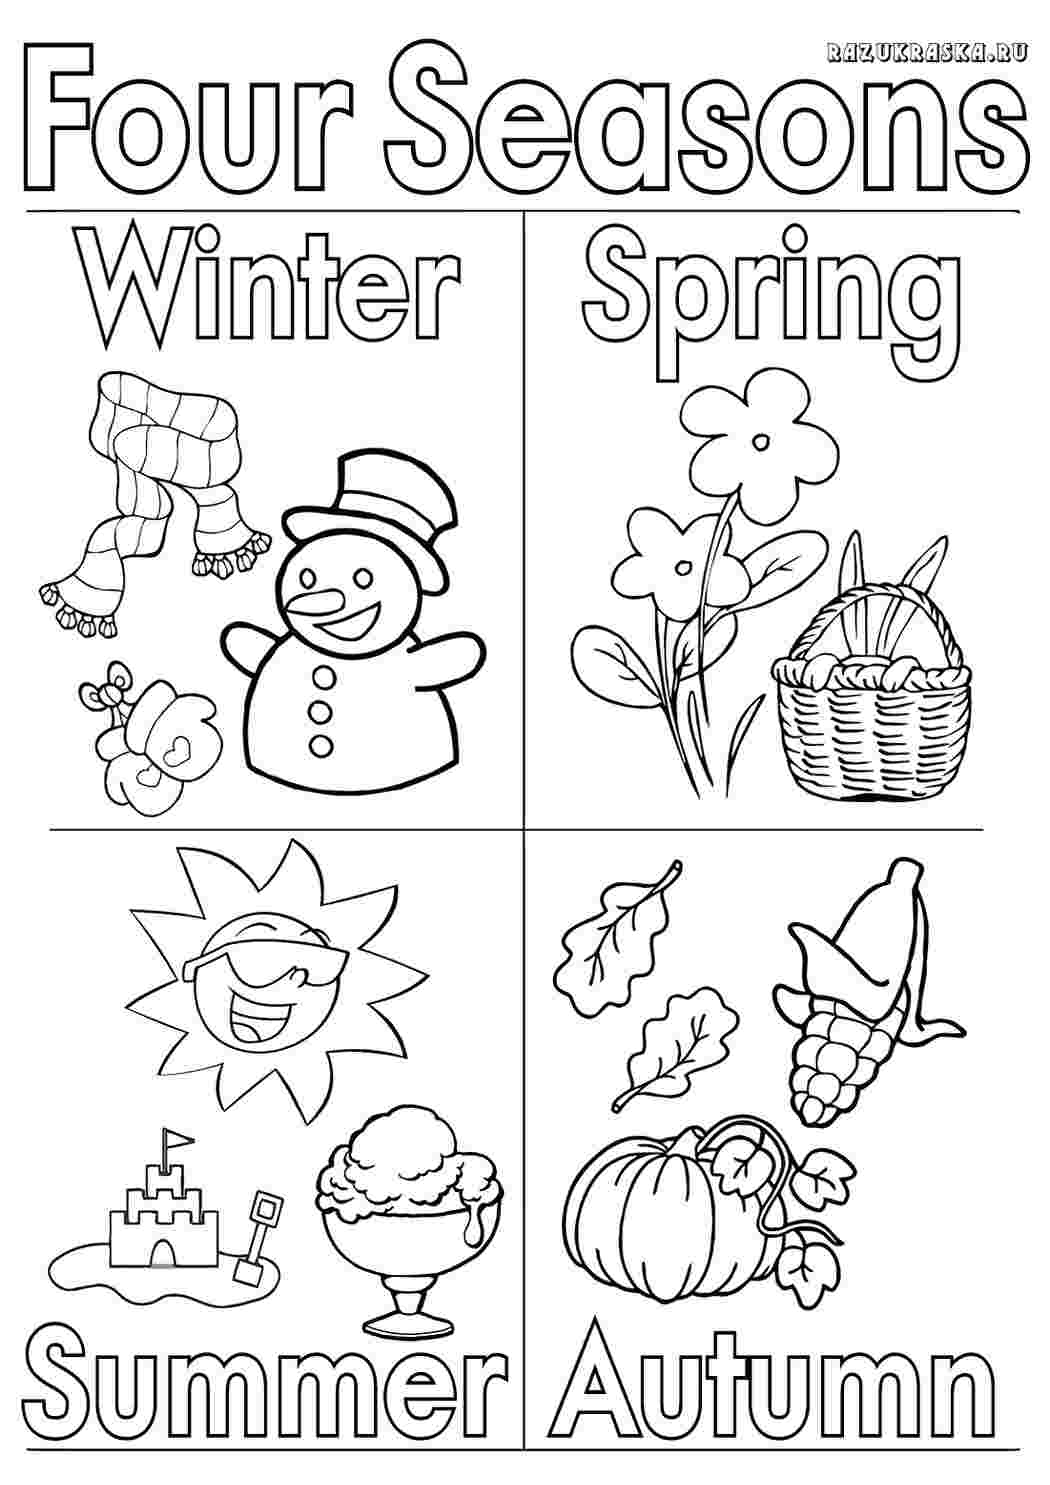 Seasons задания для детей